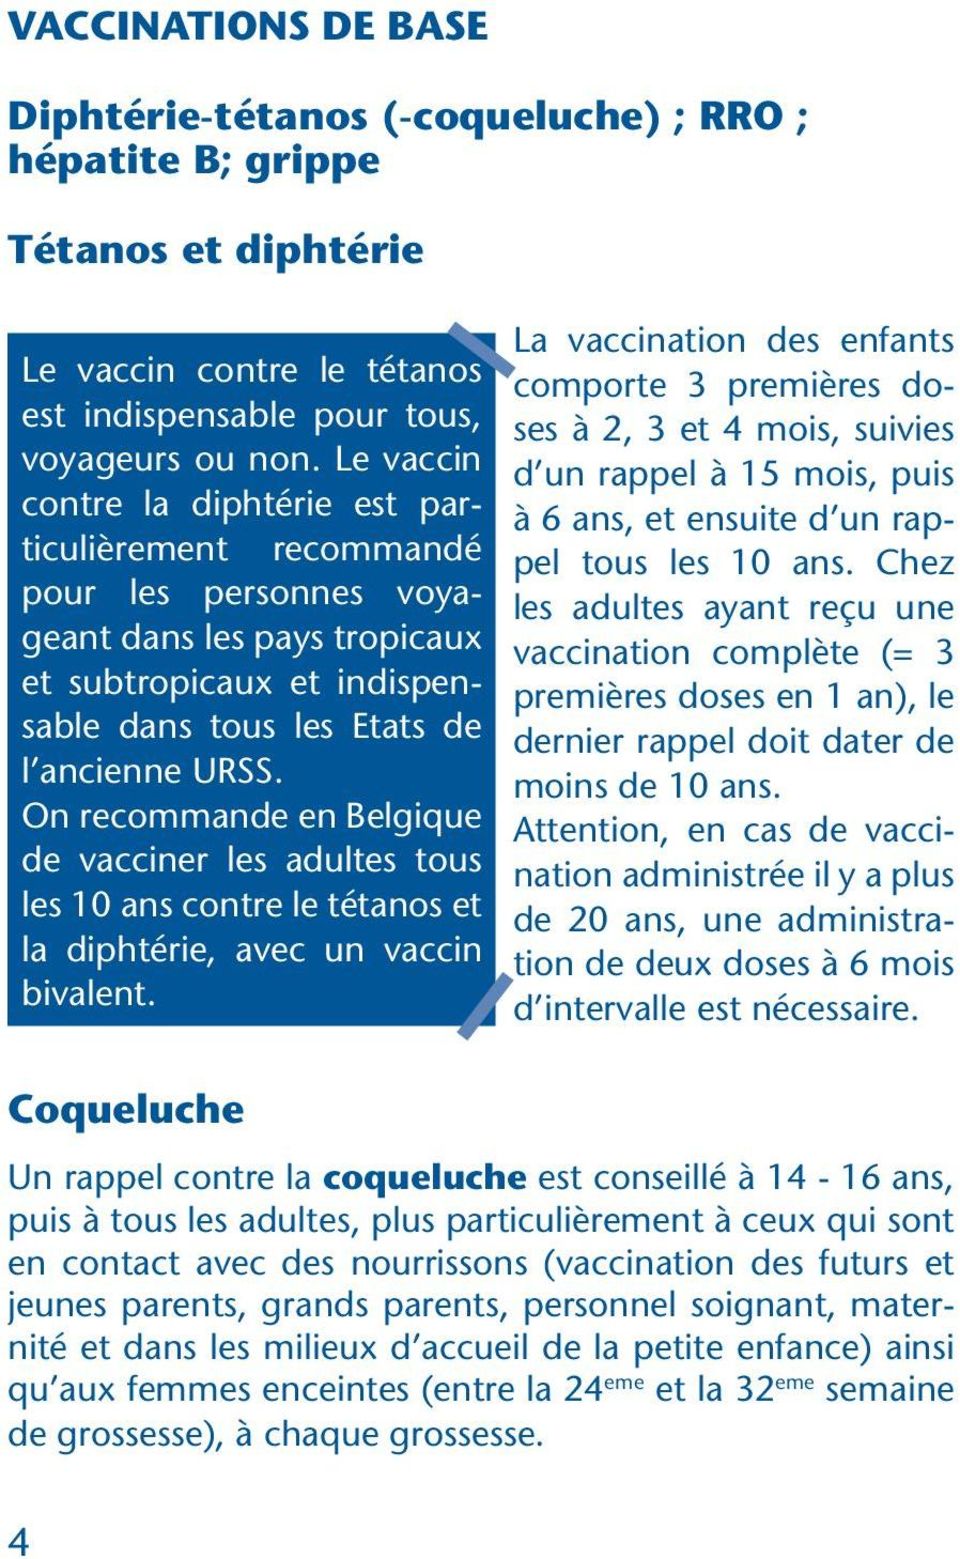 On recommande en Belgique de vacciner les adultes tous les 10 ans contre le tétanos et la diphtérie, avec un vaccin bivalent.